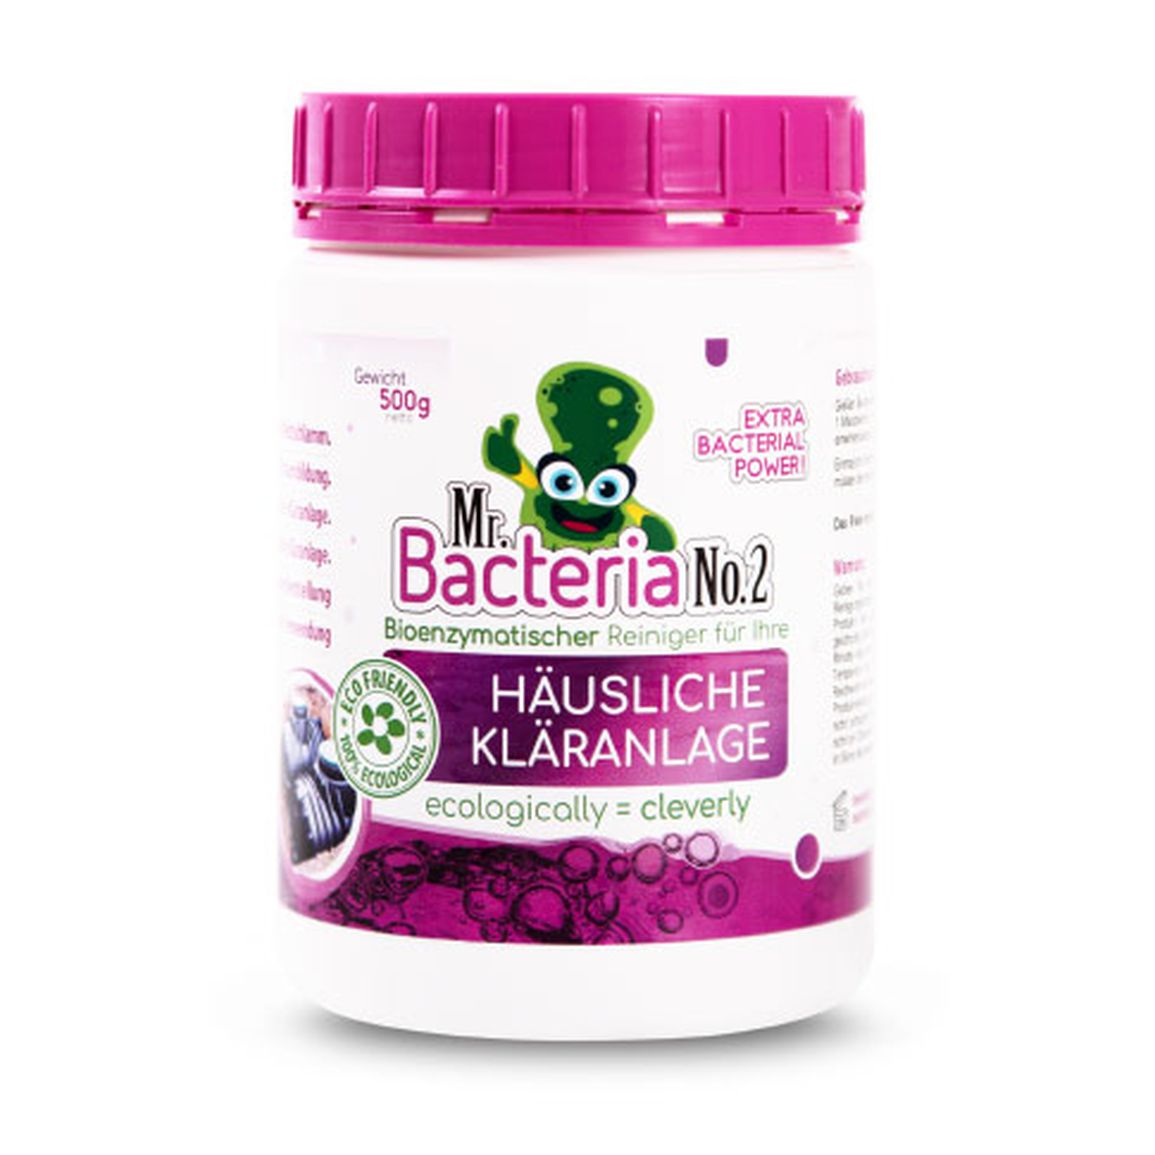 Mr.Bacteria No.2 Bioenzymatischer Reiniger für Ihre